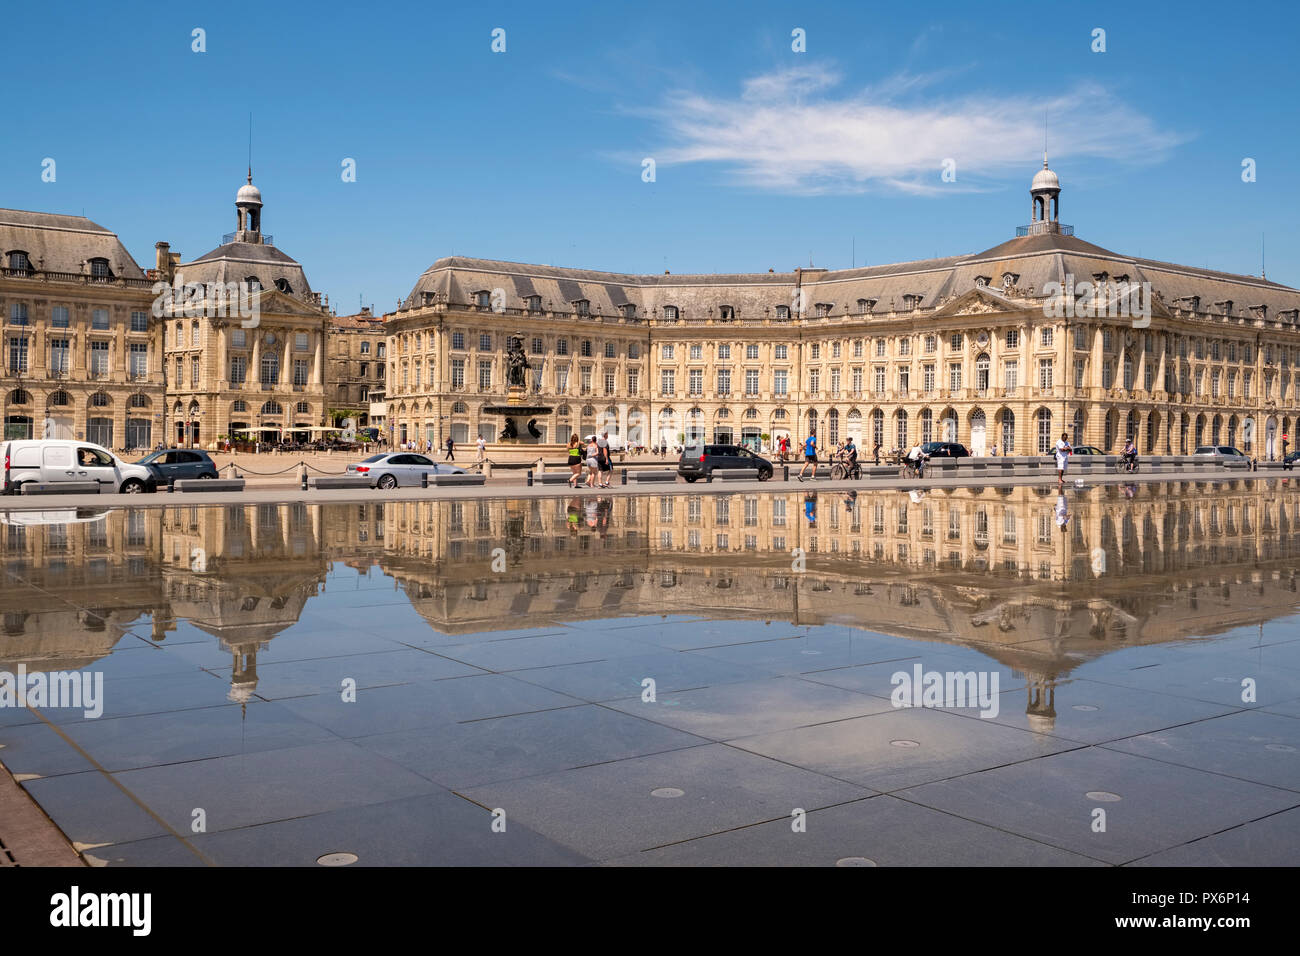 The Water Mirror, Miroir d'eau, in the Place de la Bourse, Bordeaux, France, Europe Stock Photo